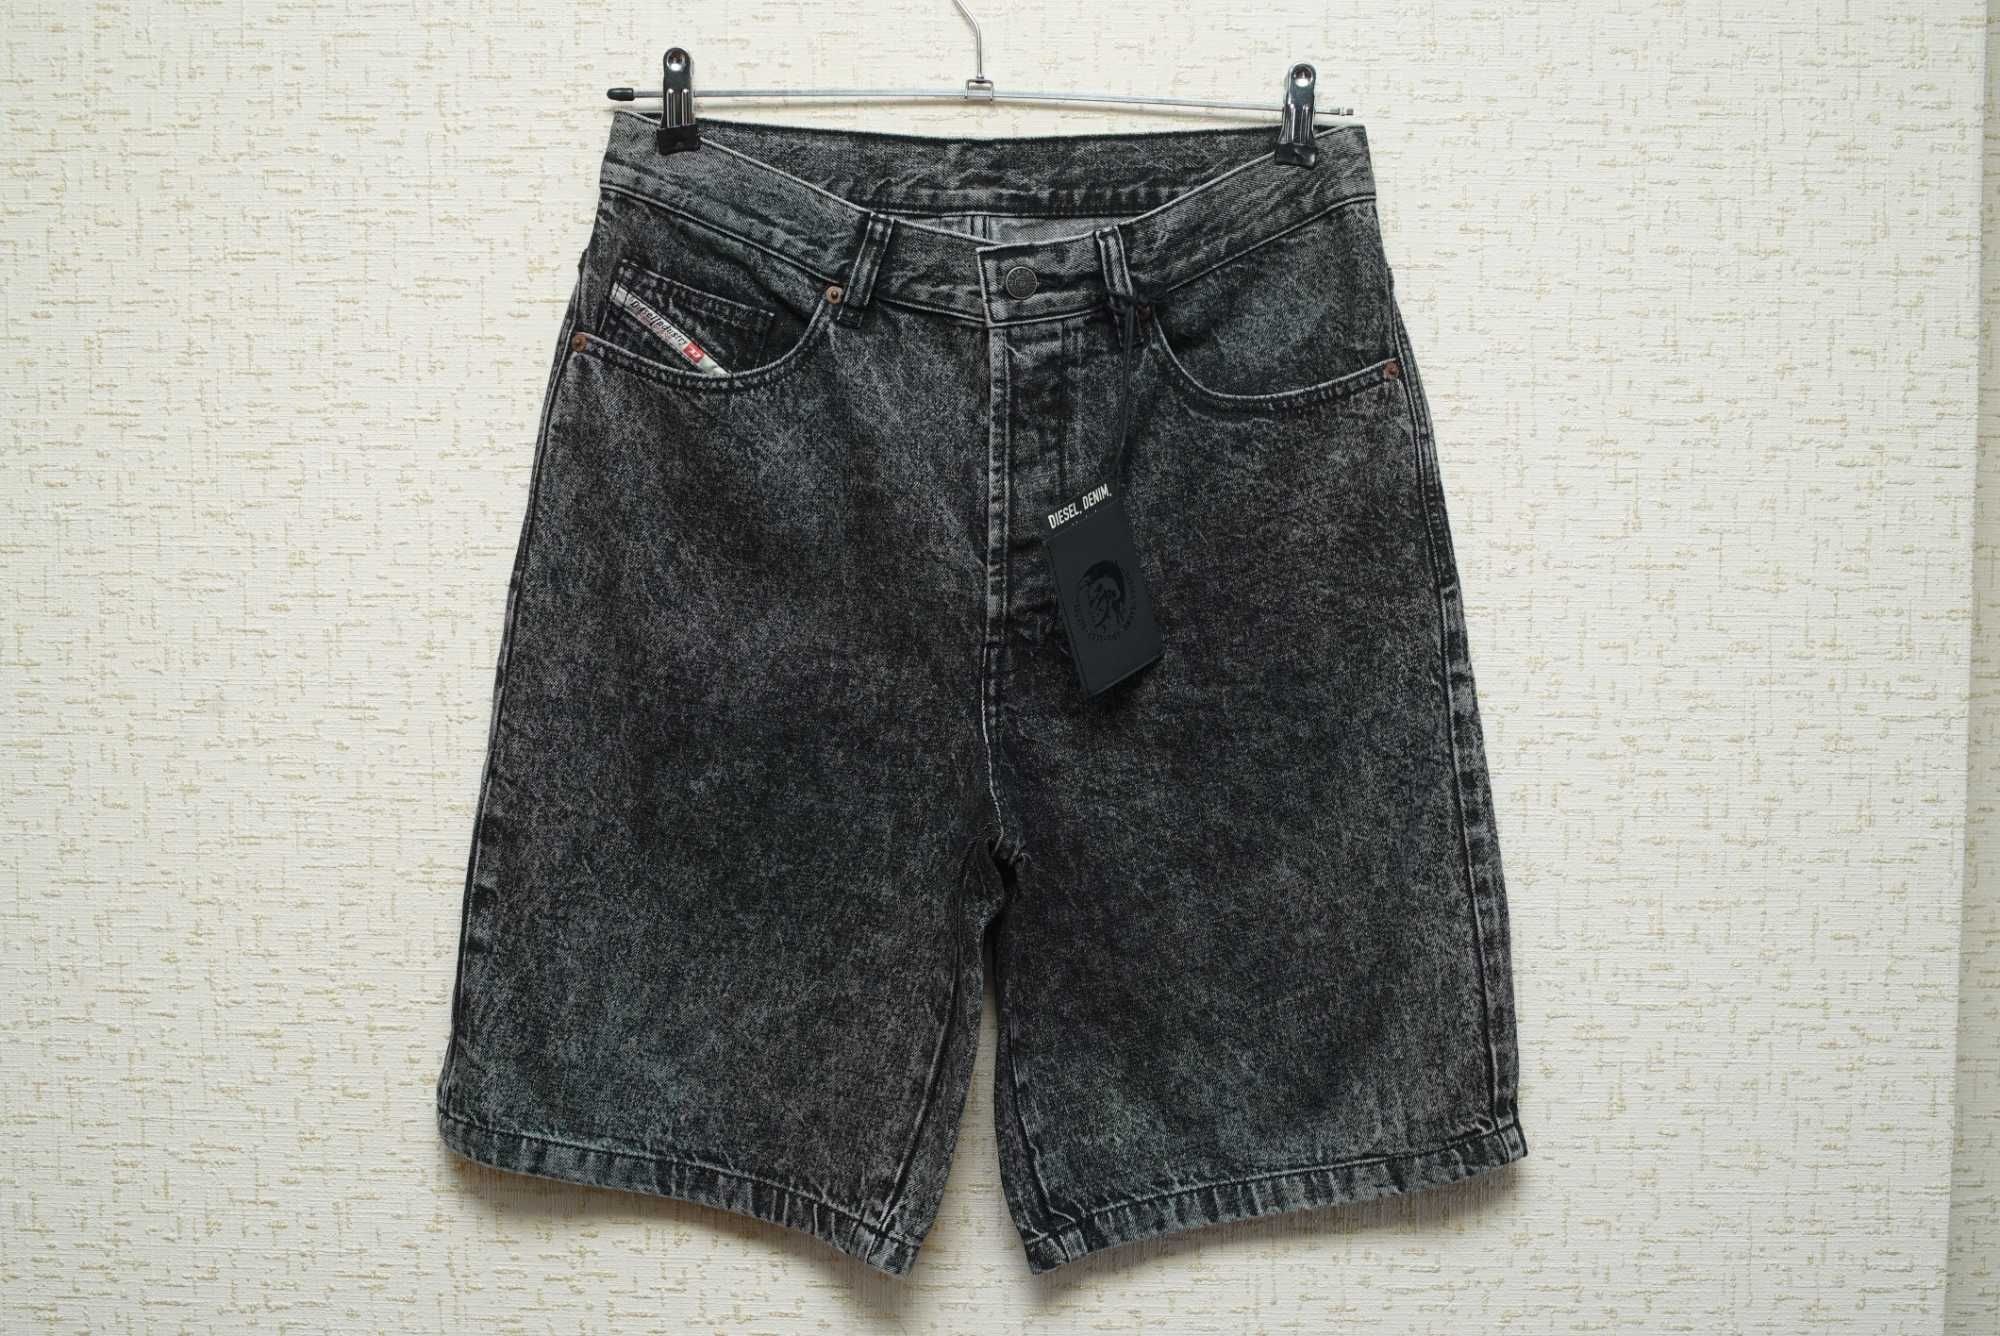 Мужские джинсовые шорты DIESEL темно-серого цвета.